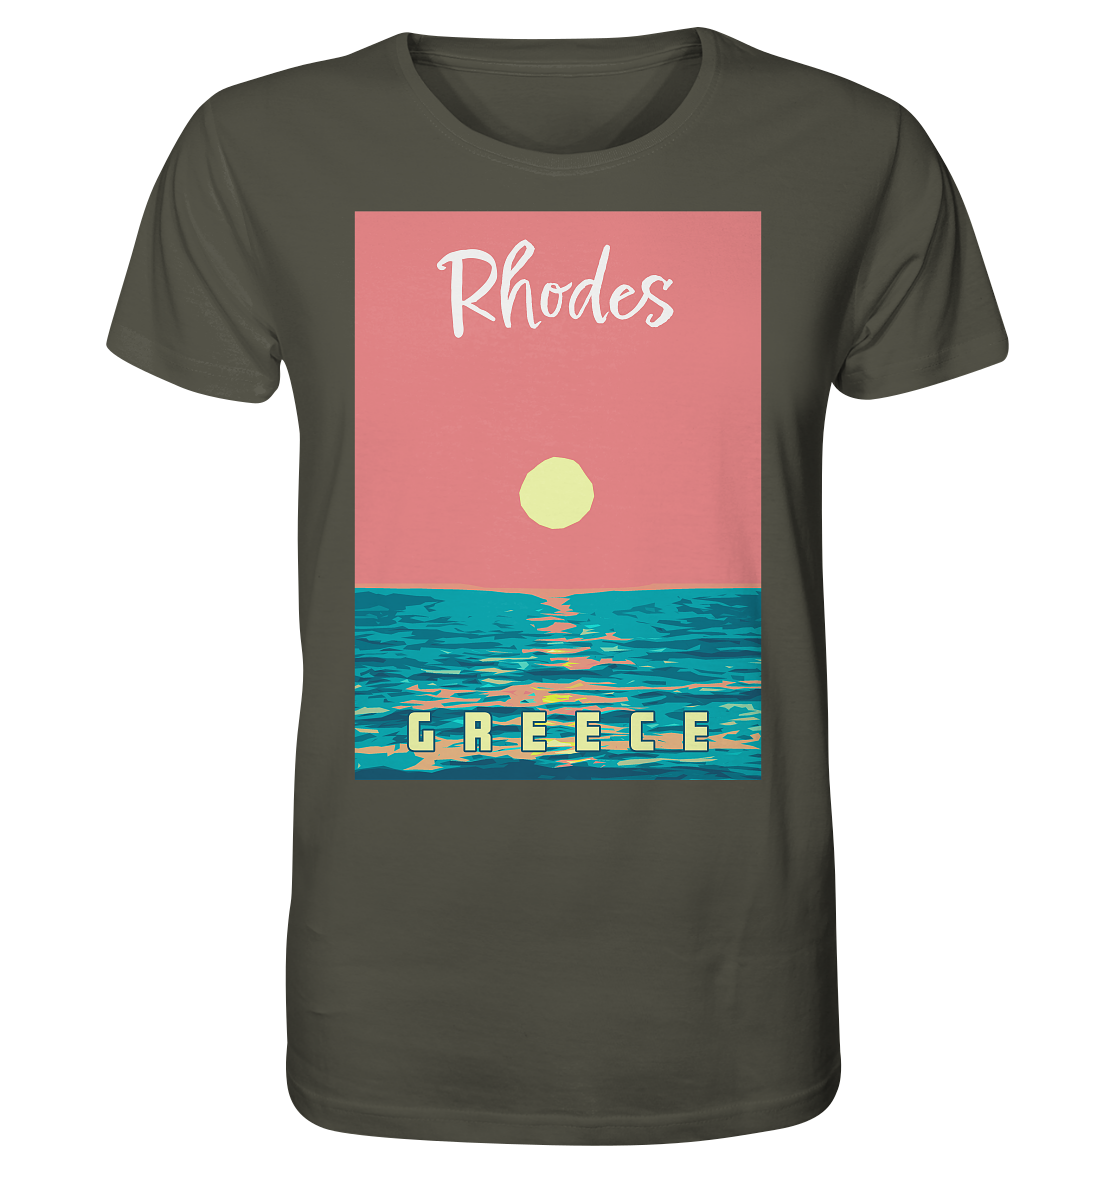 Sunset Ocean Rhodes Greece - Organic Shirt